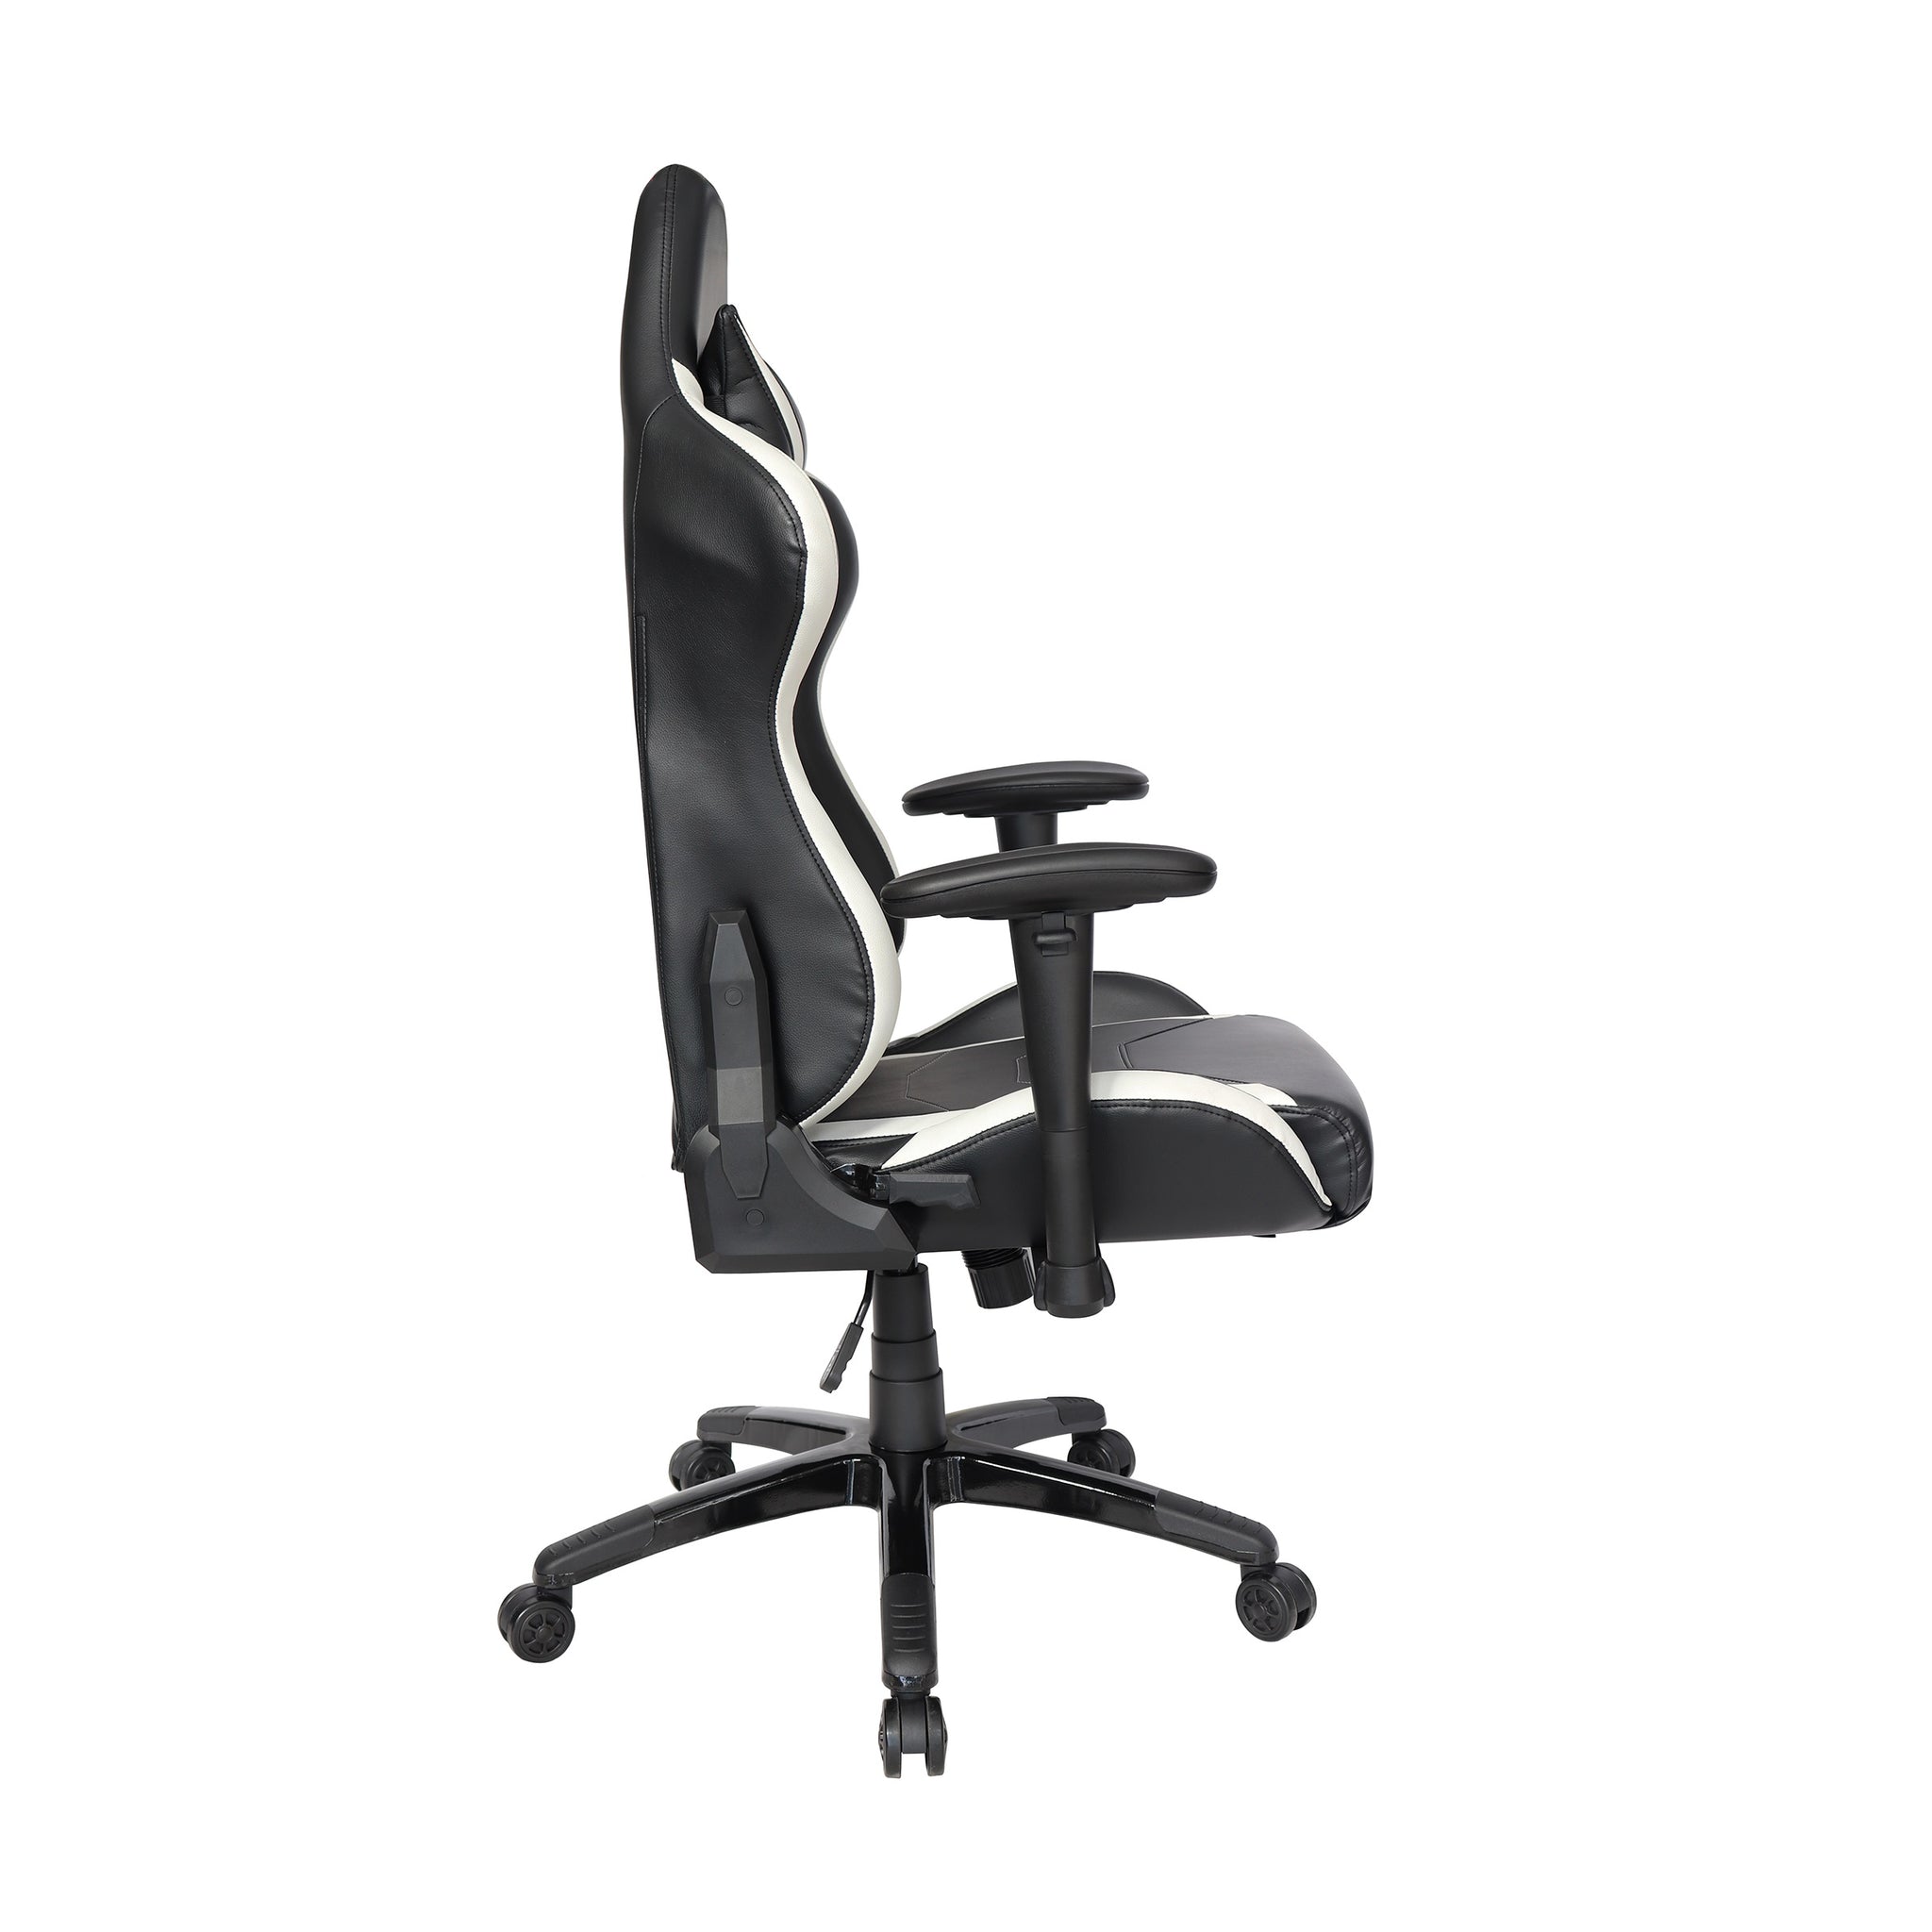 Sillón Gamer-002 respaldo y asiento tapizado en leather blanco con base nylon